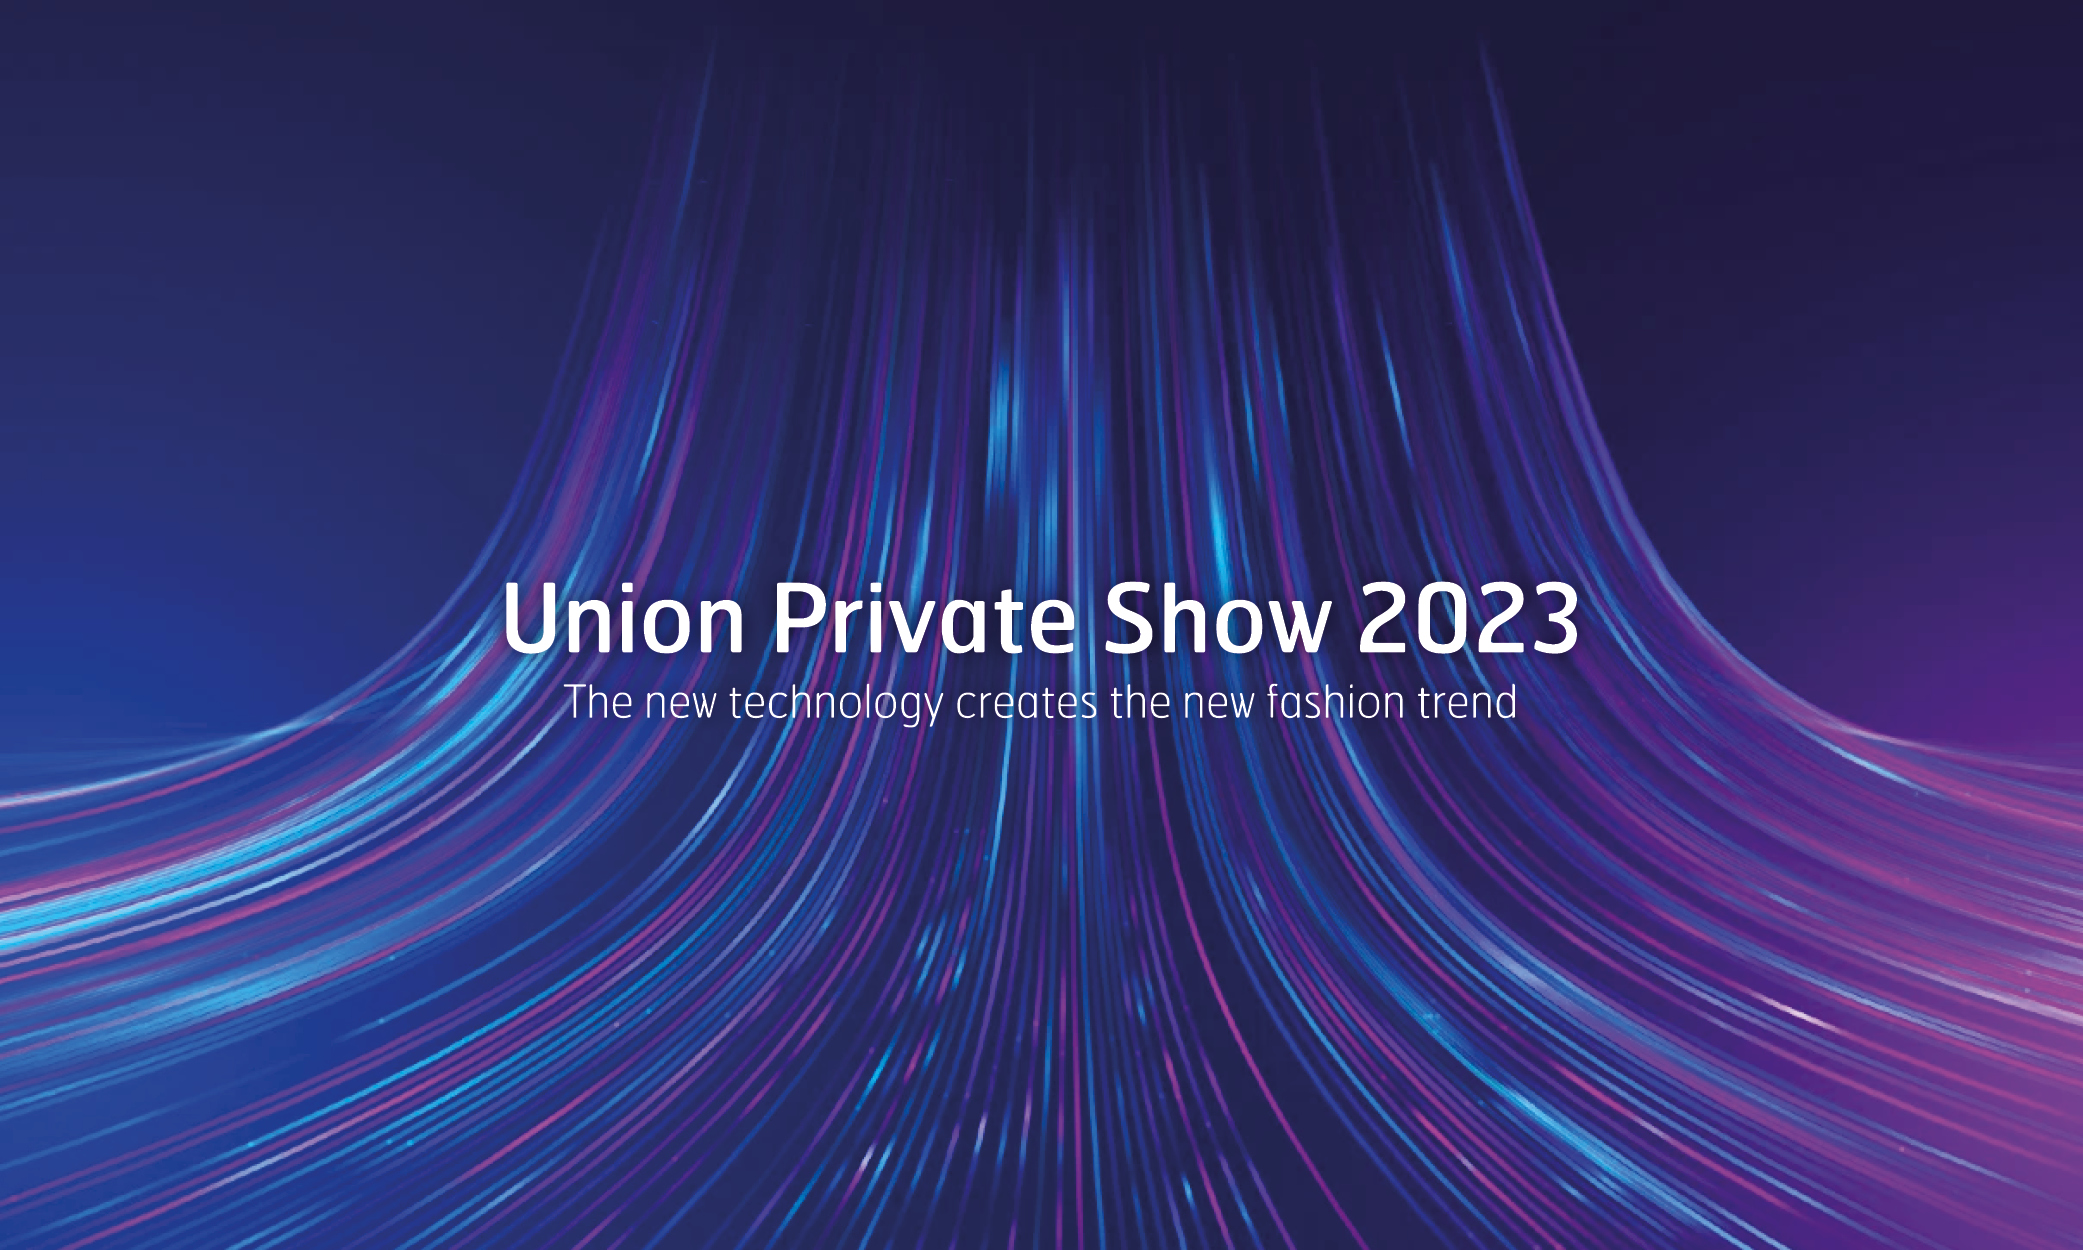 Union Private Show 2023